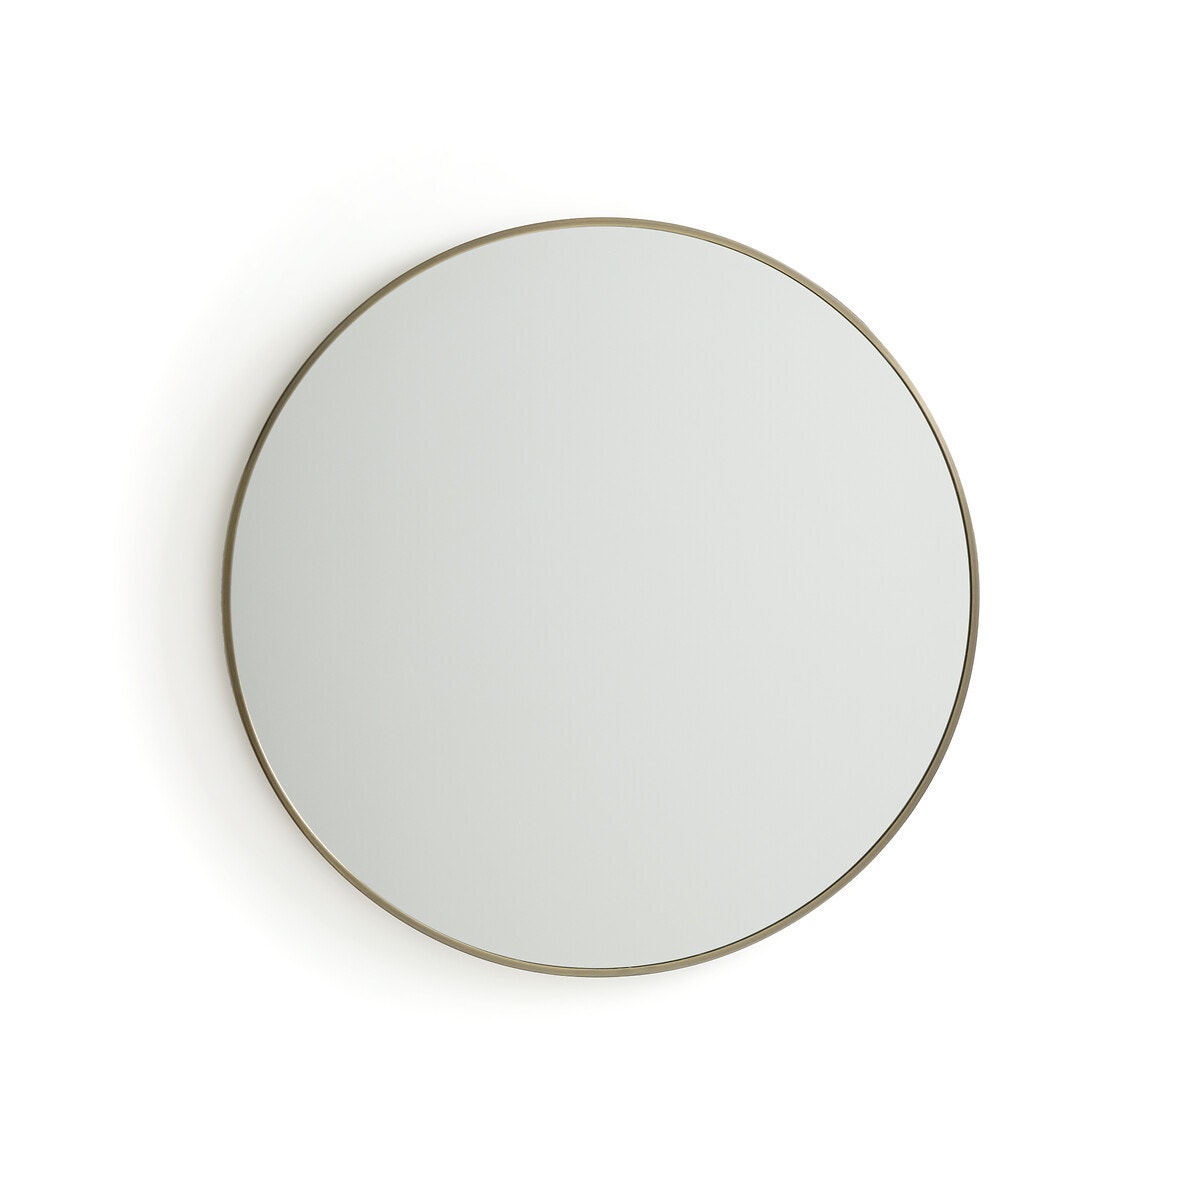 Μεταλλικός καθρέφτης με μπρονζέ παλαιωμένο φινίρισμα Δ80 εκ., Caligone